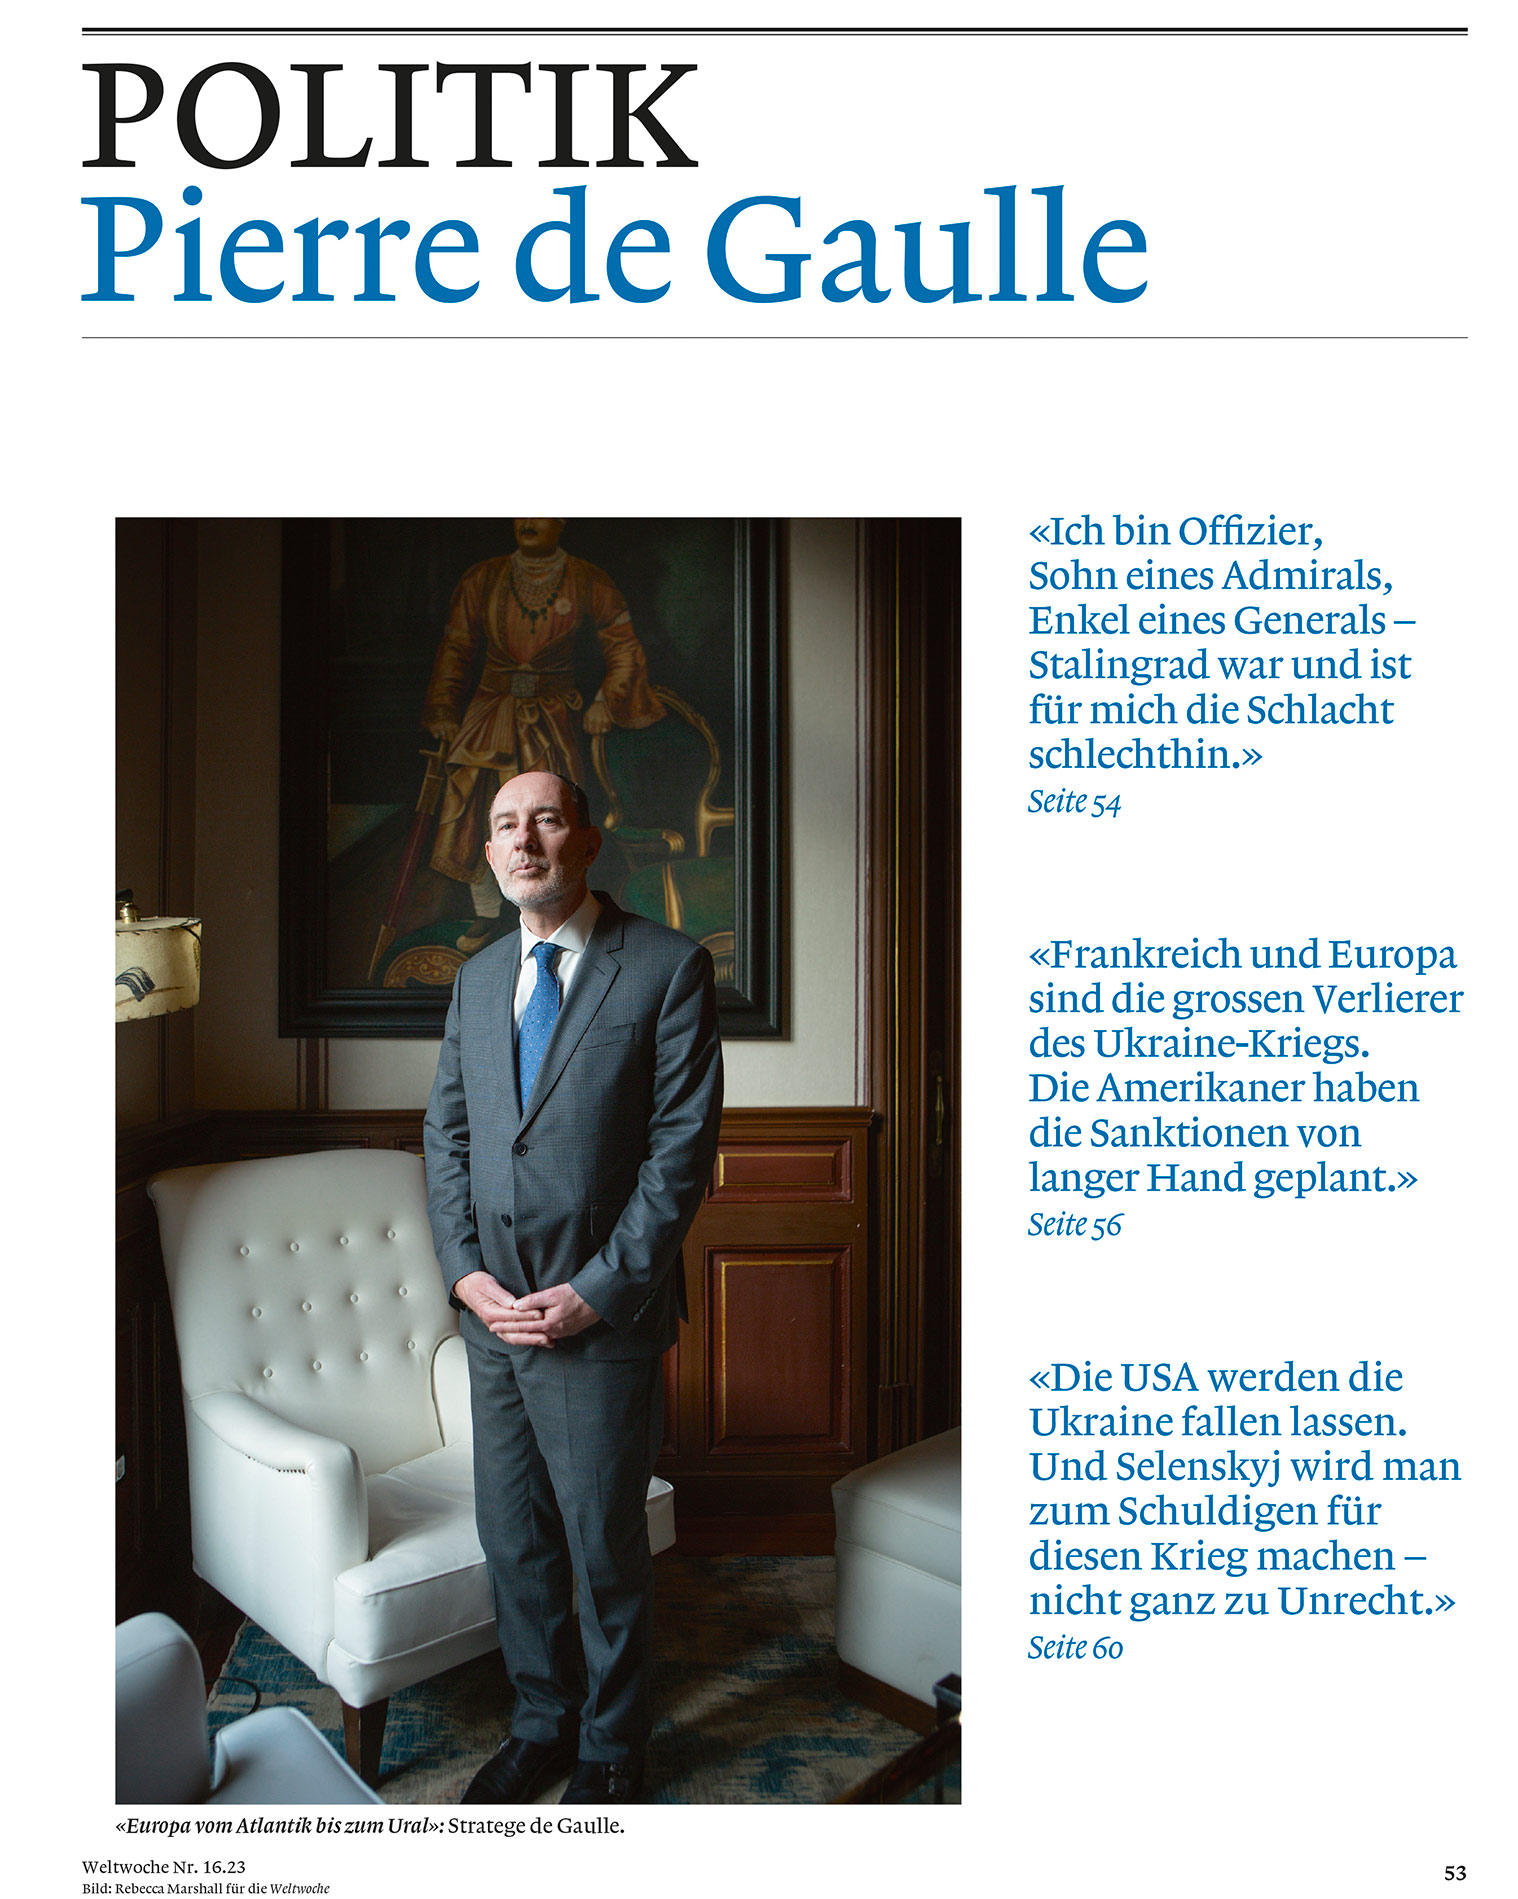 Title page for Politics section of German language magazine, showing a portrait of Pierre de Gaulle